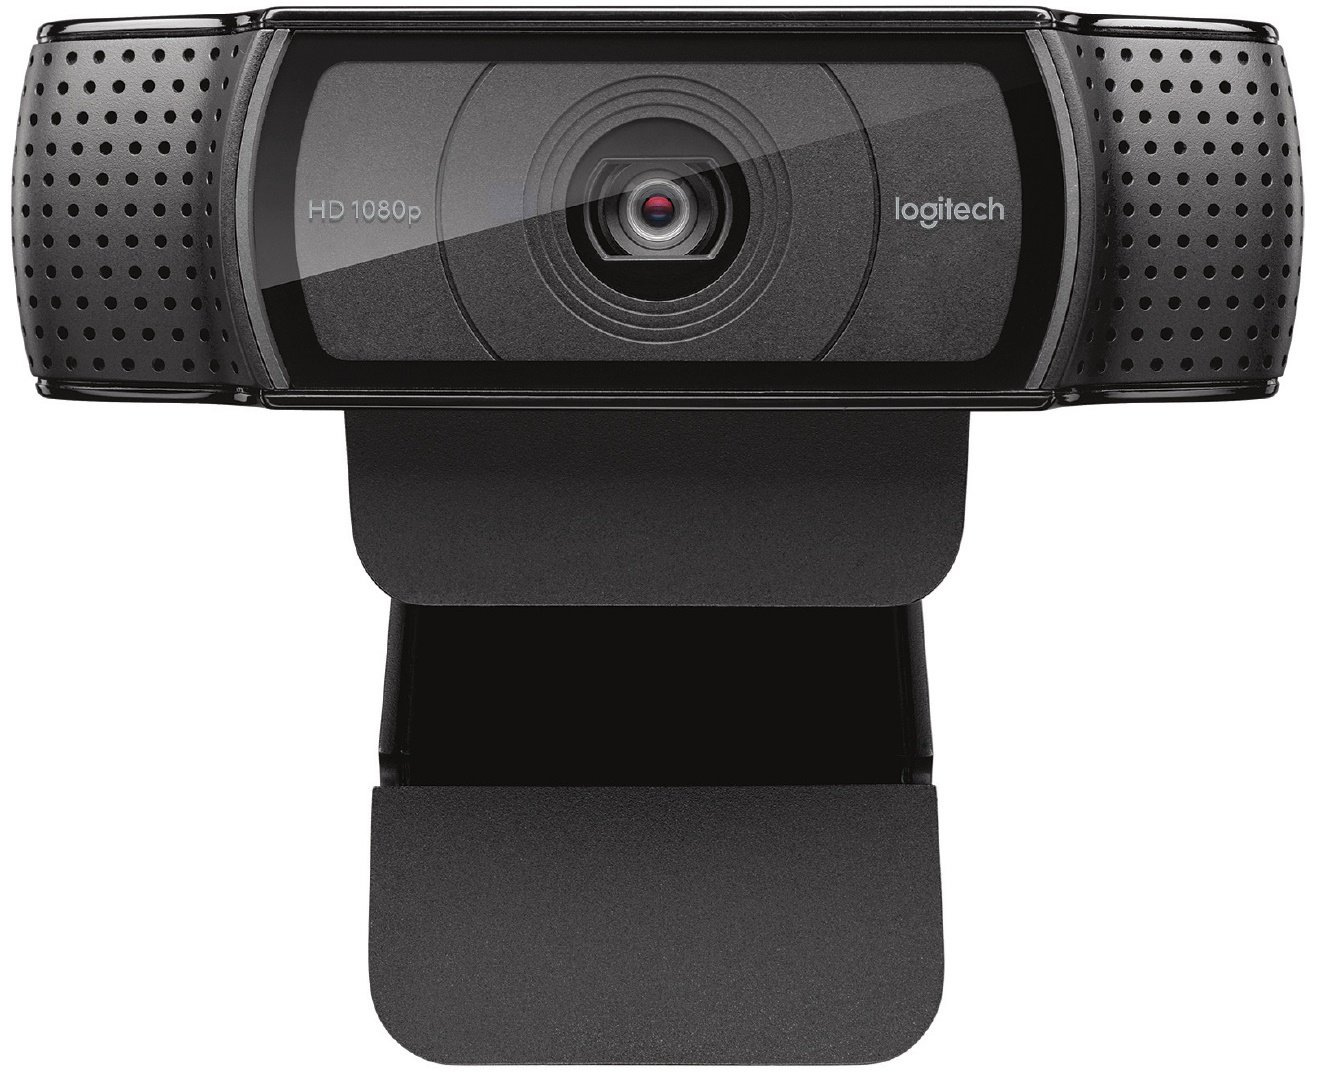 Webcam Logitech C920 cristal FHD y autoenfoque